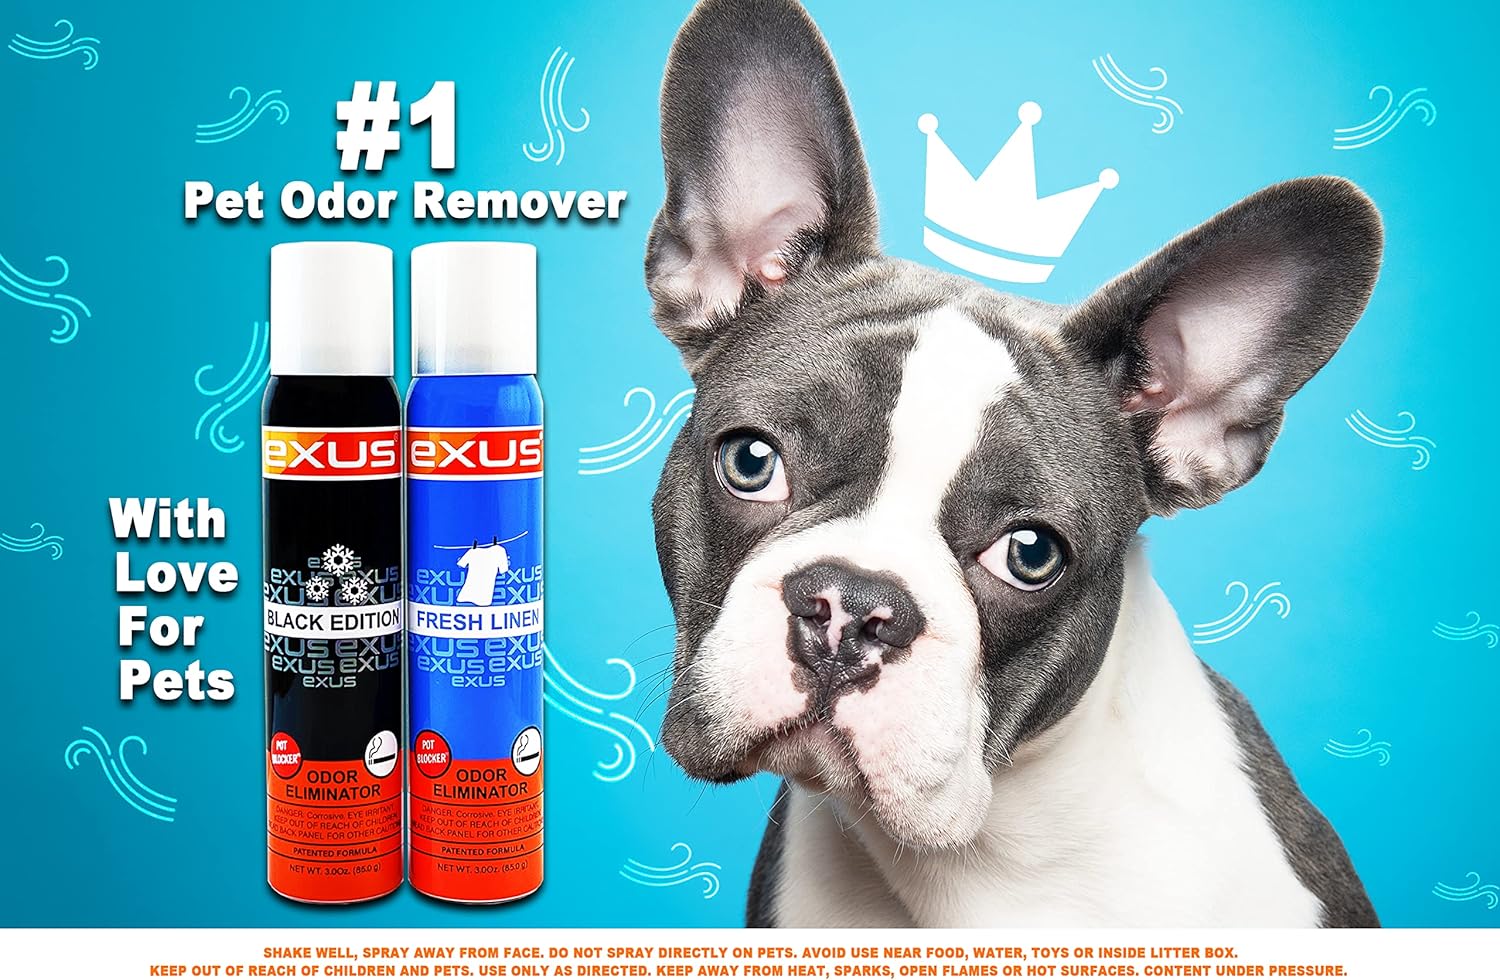 Exus Odor Eliminator & Air Freshener Spray For Strong Odor, Pet Odor Eliminator, Room Spray, Car Freshener (3 Pack) (Fresh Linen) : Health & Household